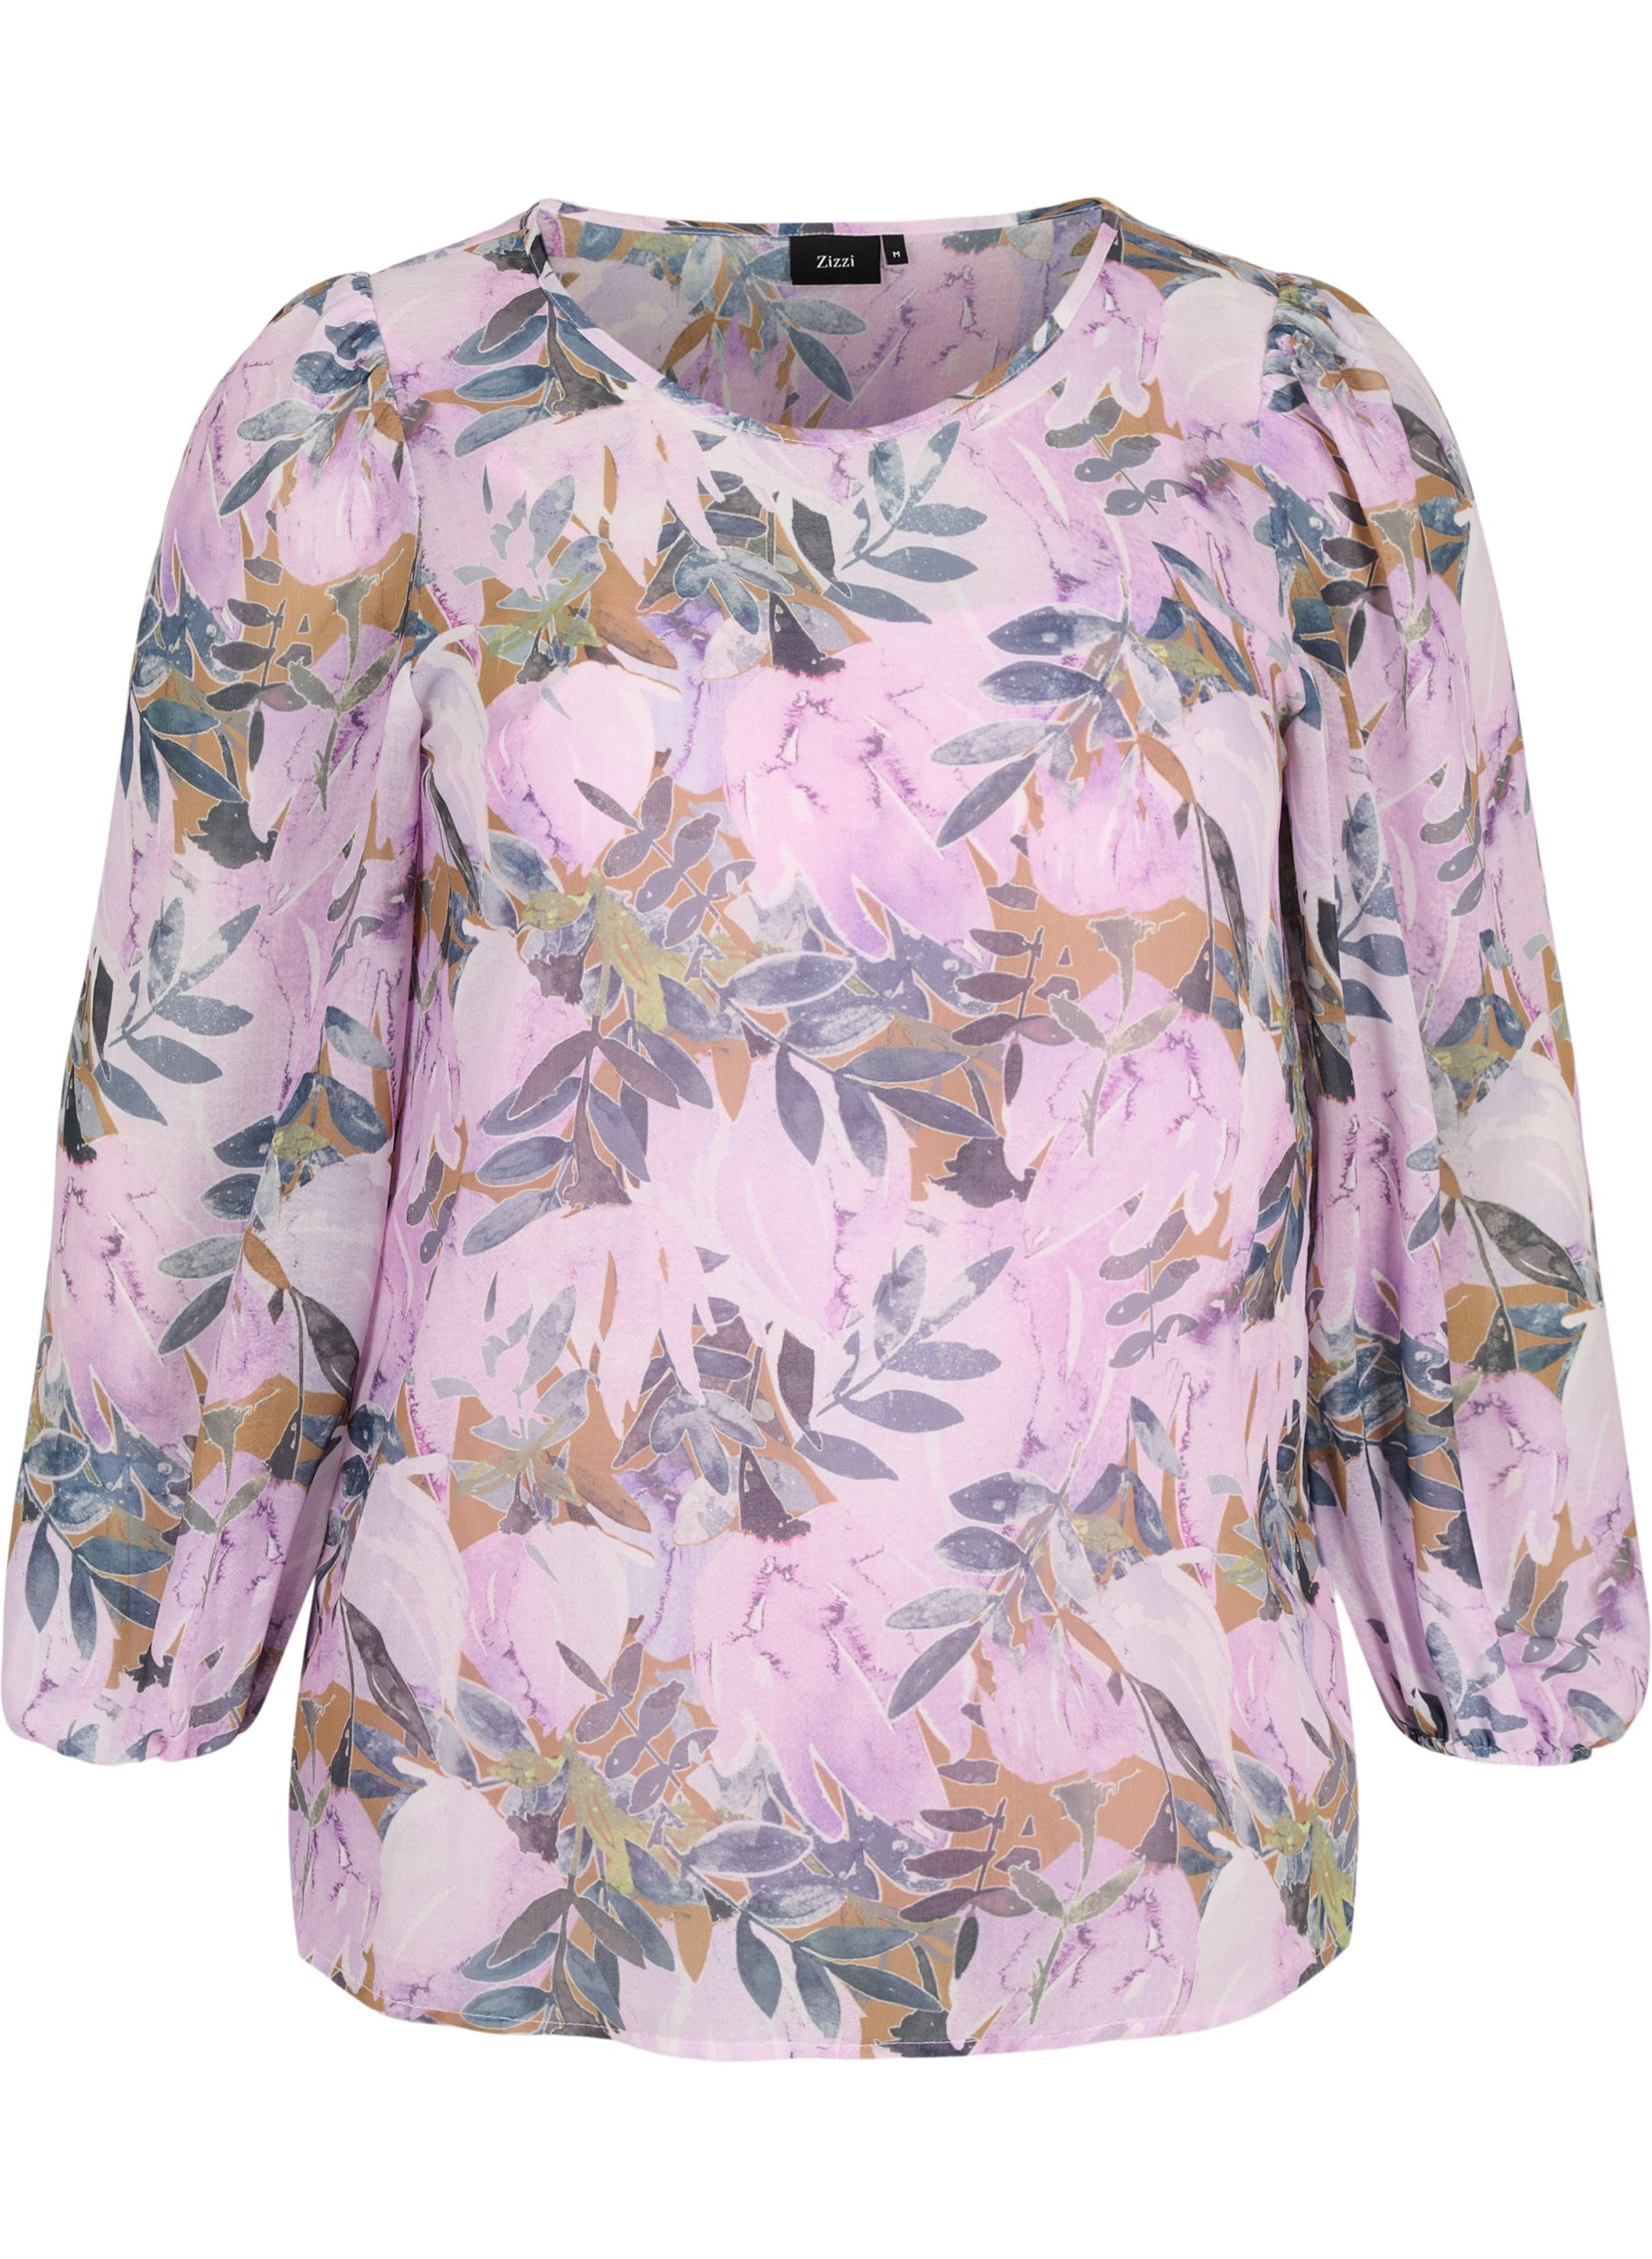 Bedruckte Bluse mit langen Ärmeln, Orchid Bouquet AOP